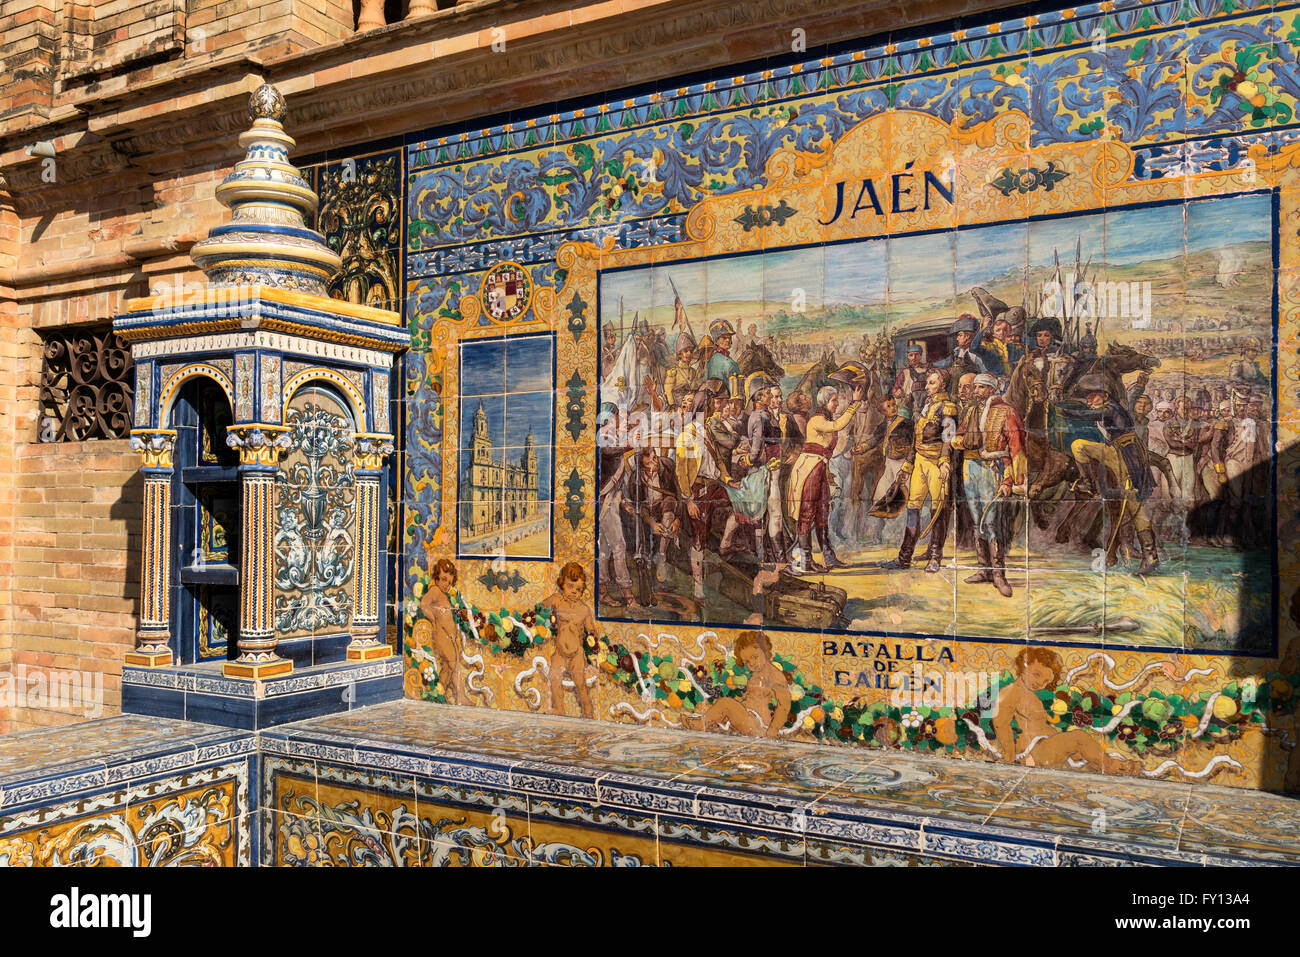 Antique de cerámica, azulejos de la pared representando a las provincias y ciudades de España , Jaén, Plaza de España, la plaza de España, Sevilla, Foto de stock